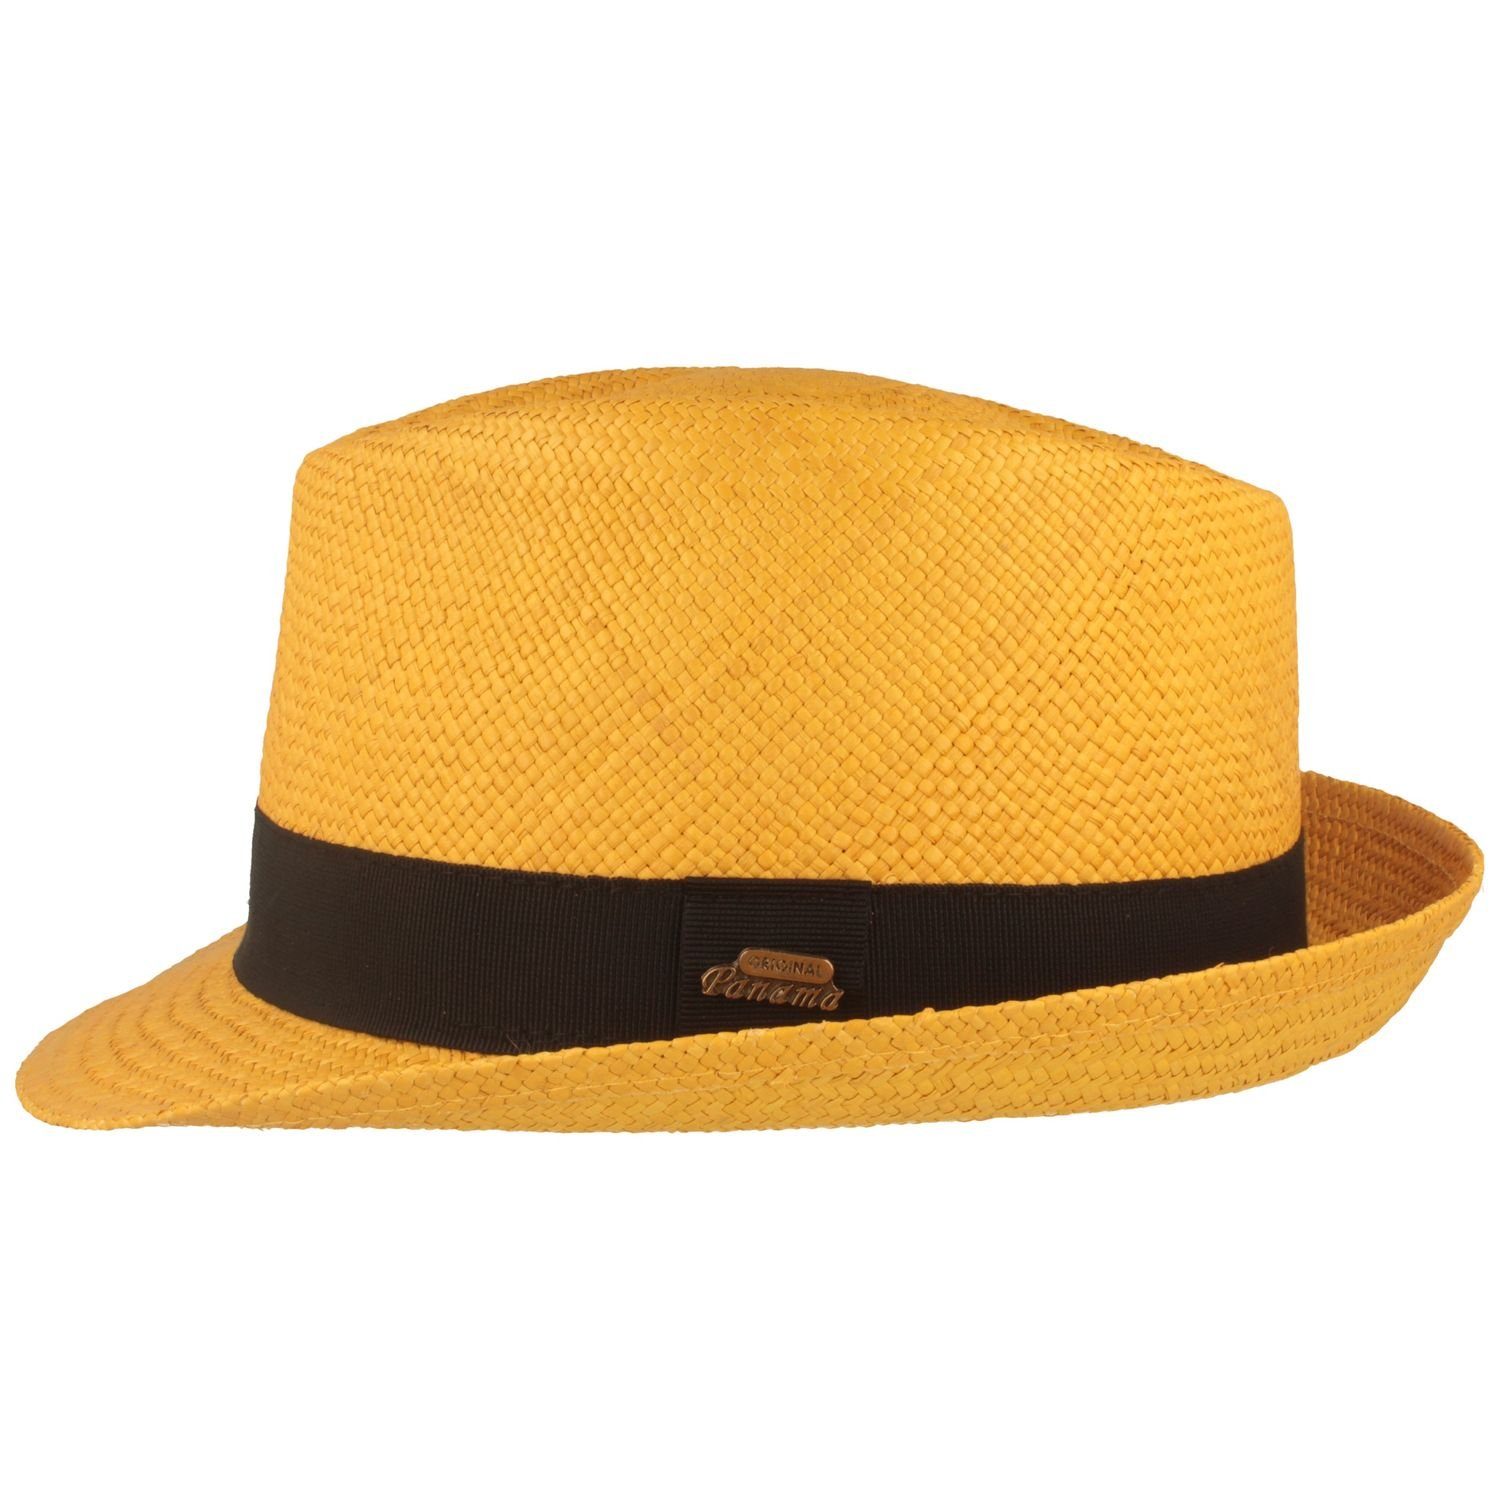 Breiter Strohhut original Panama Hut mit 50+ gelb Trilby UV-Schutz